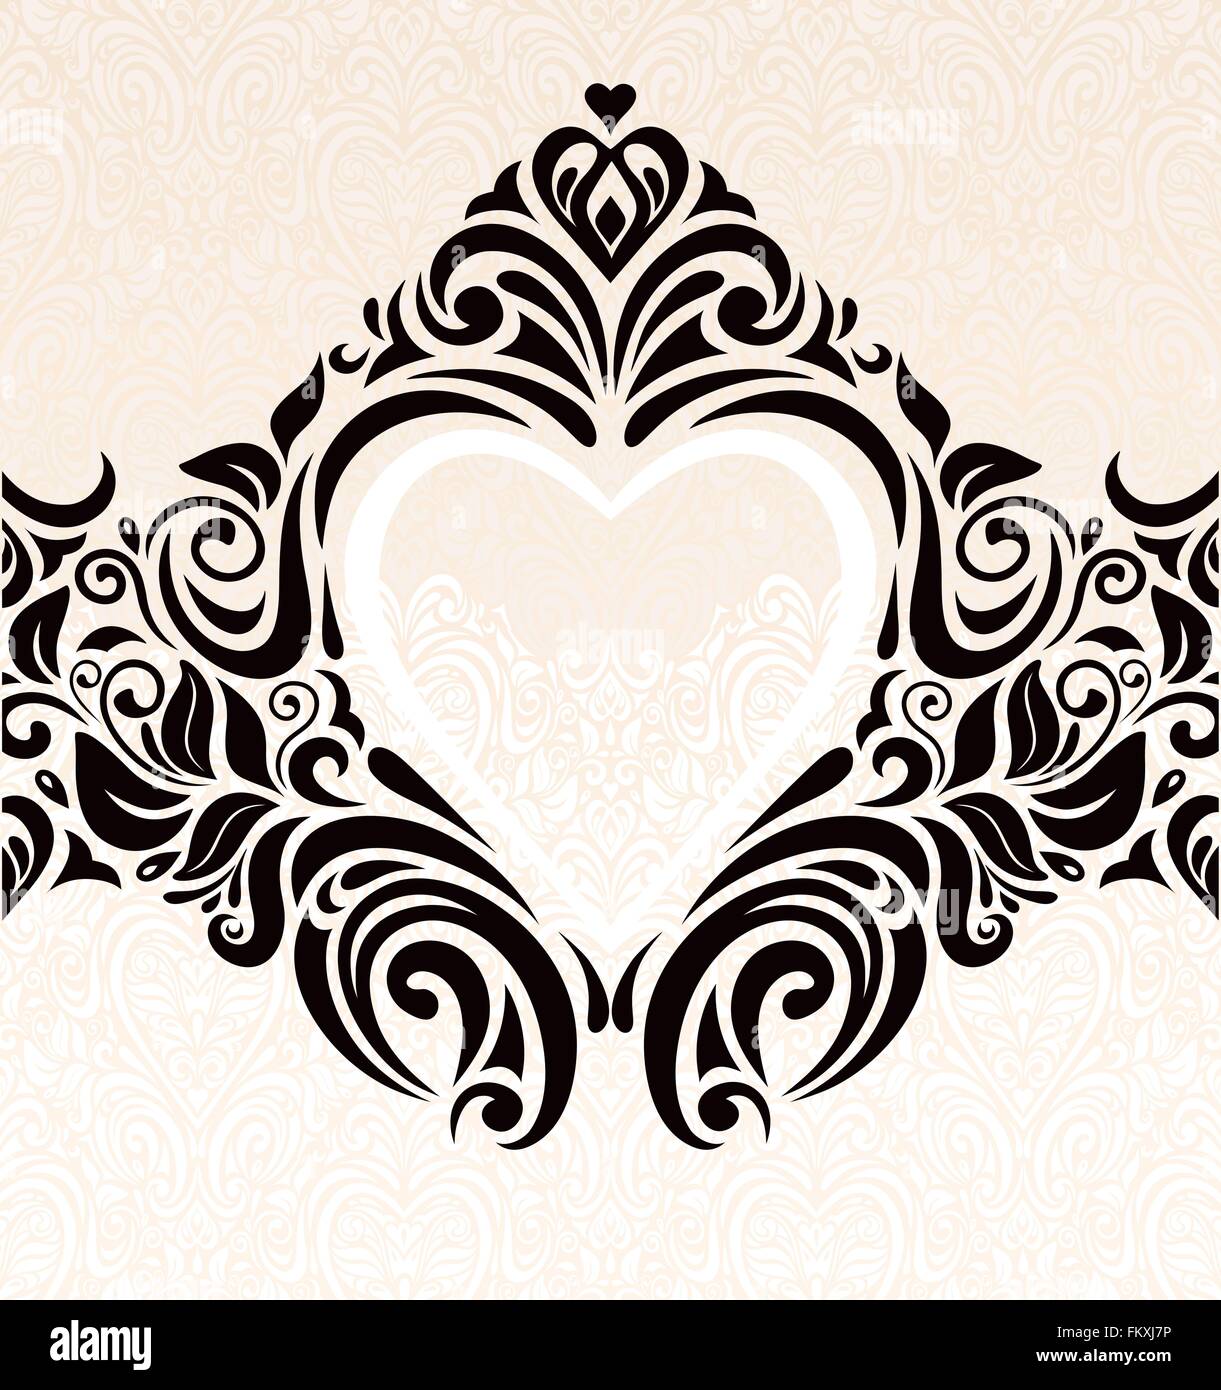 Vintage Hochzeit Ecru & schwarz modische Einladung Wallpaper Hintergrund mit Herz ornament Stock Vektor